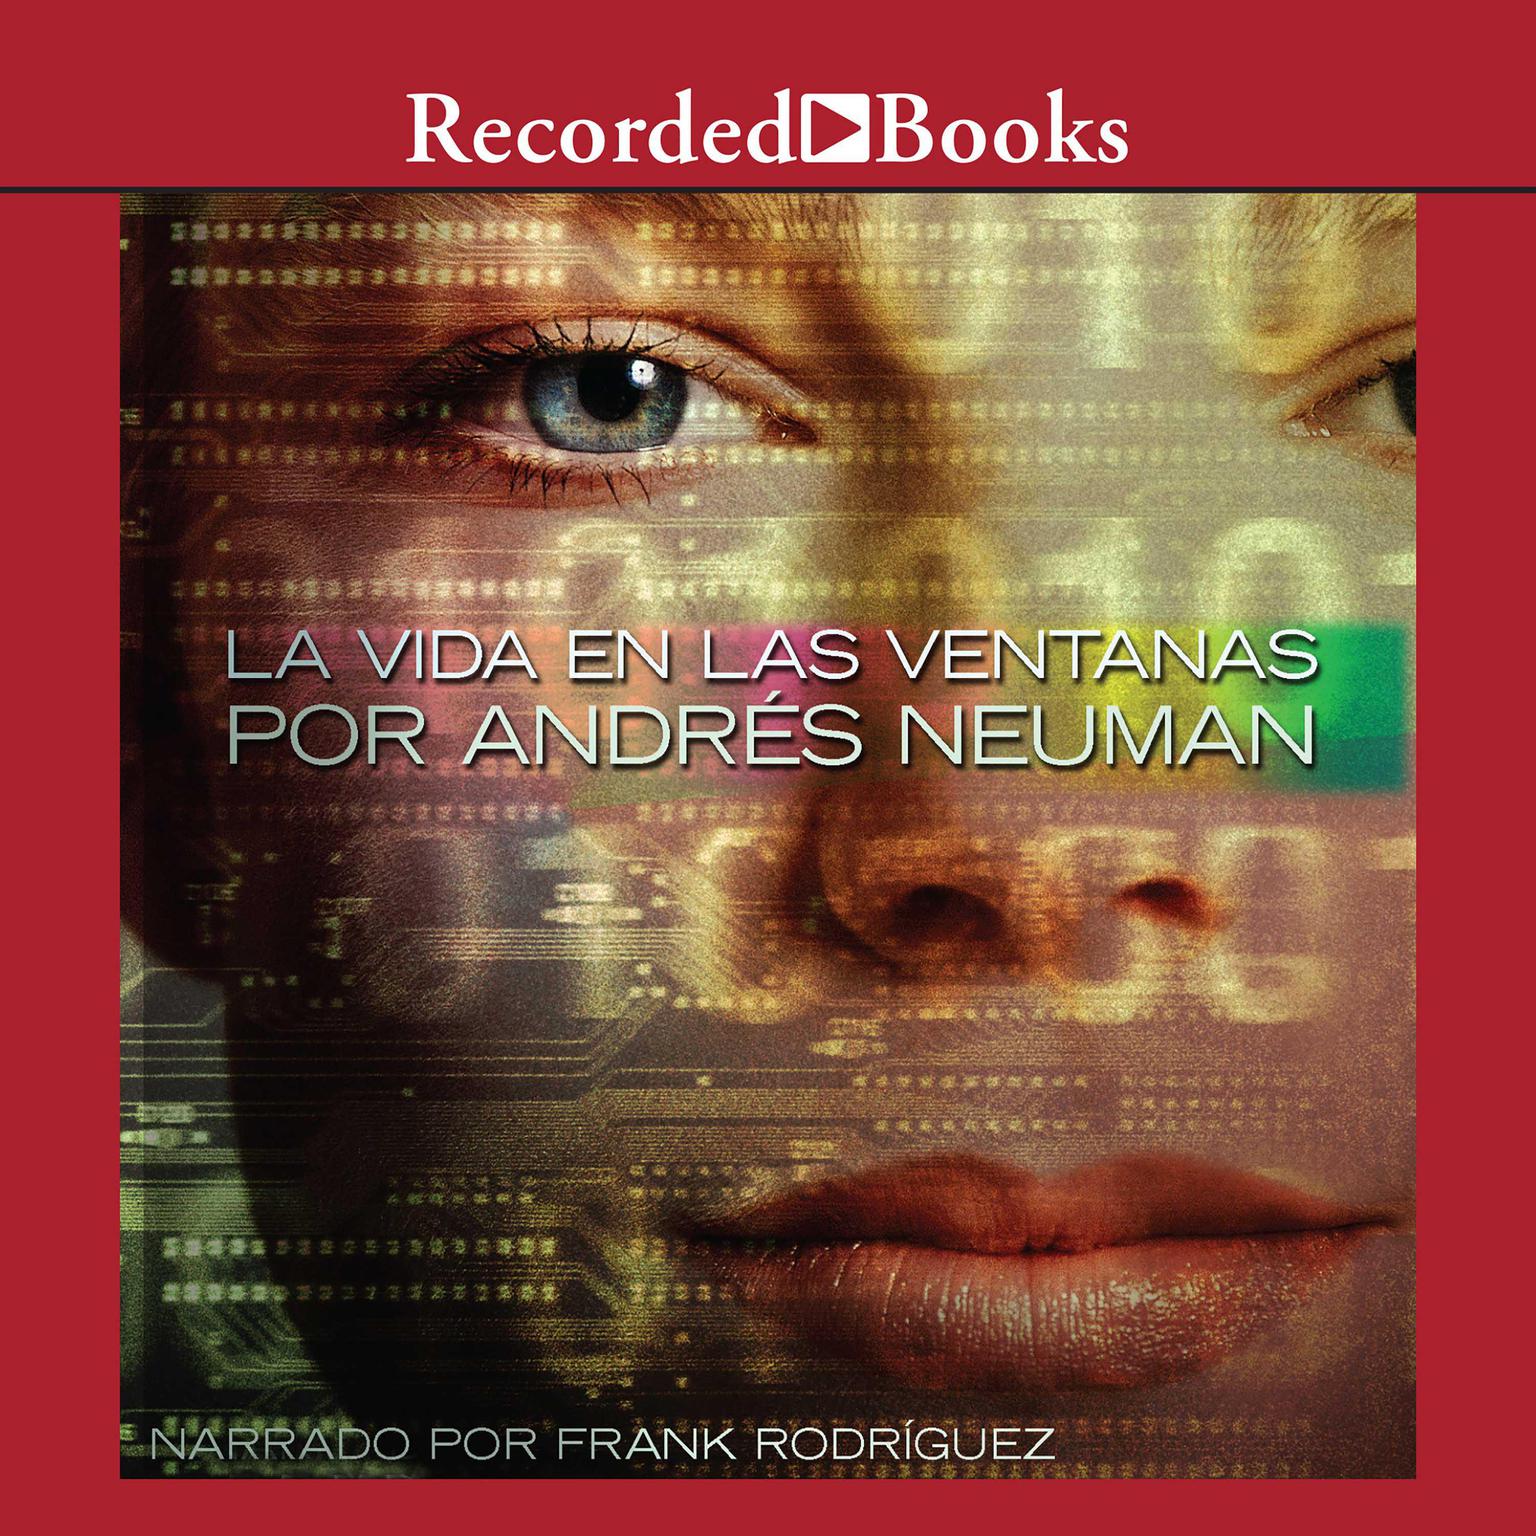 La vida en las ventanas (Life in the Windows) Audiobook, by Andrés Neuman